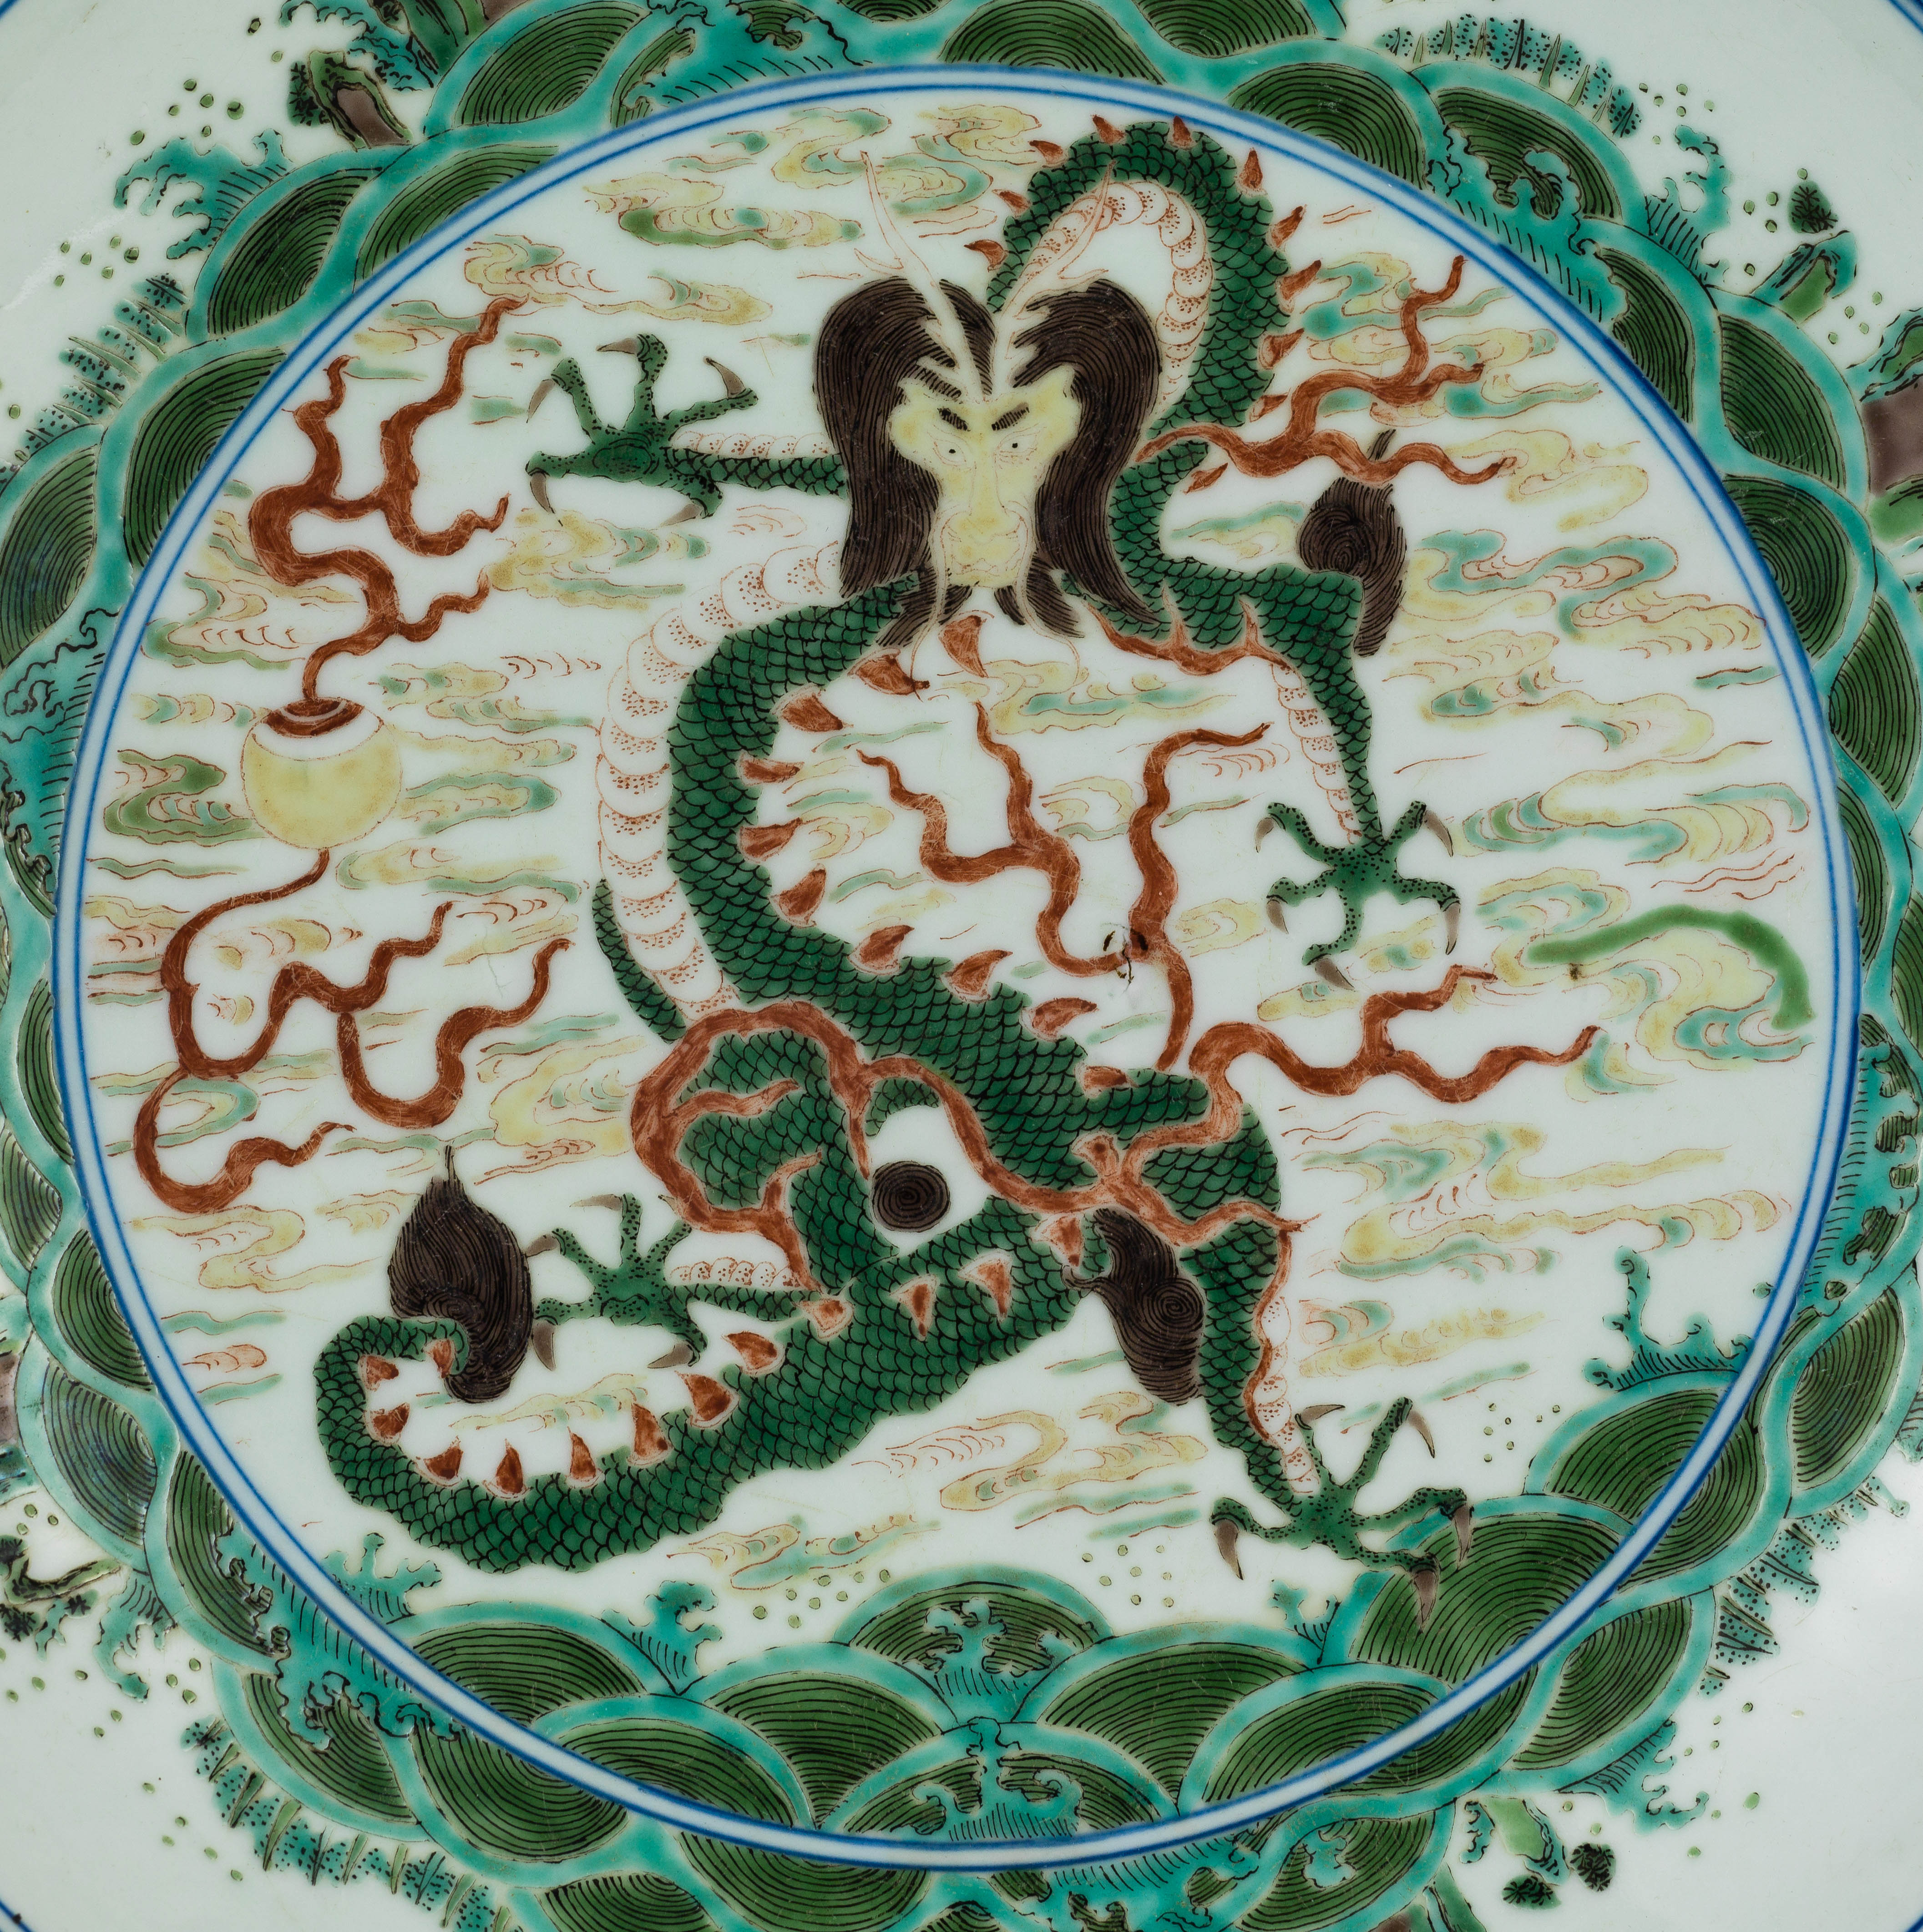  明崇禎7年（西元1634年）五彩海水龍紋盤「甲戌春孟趙府造用」款